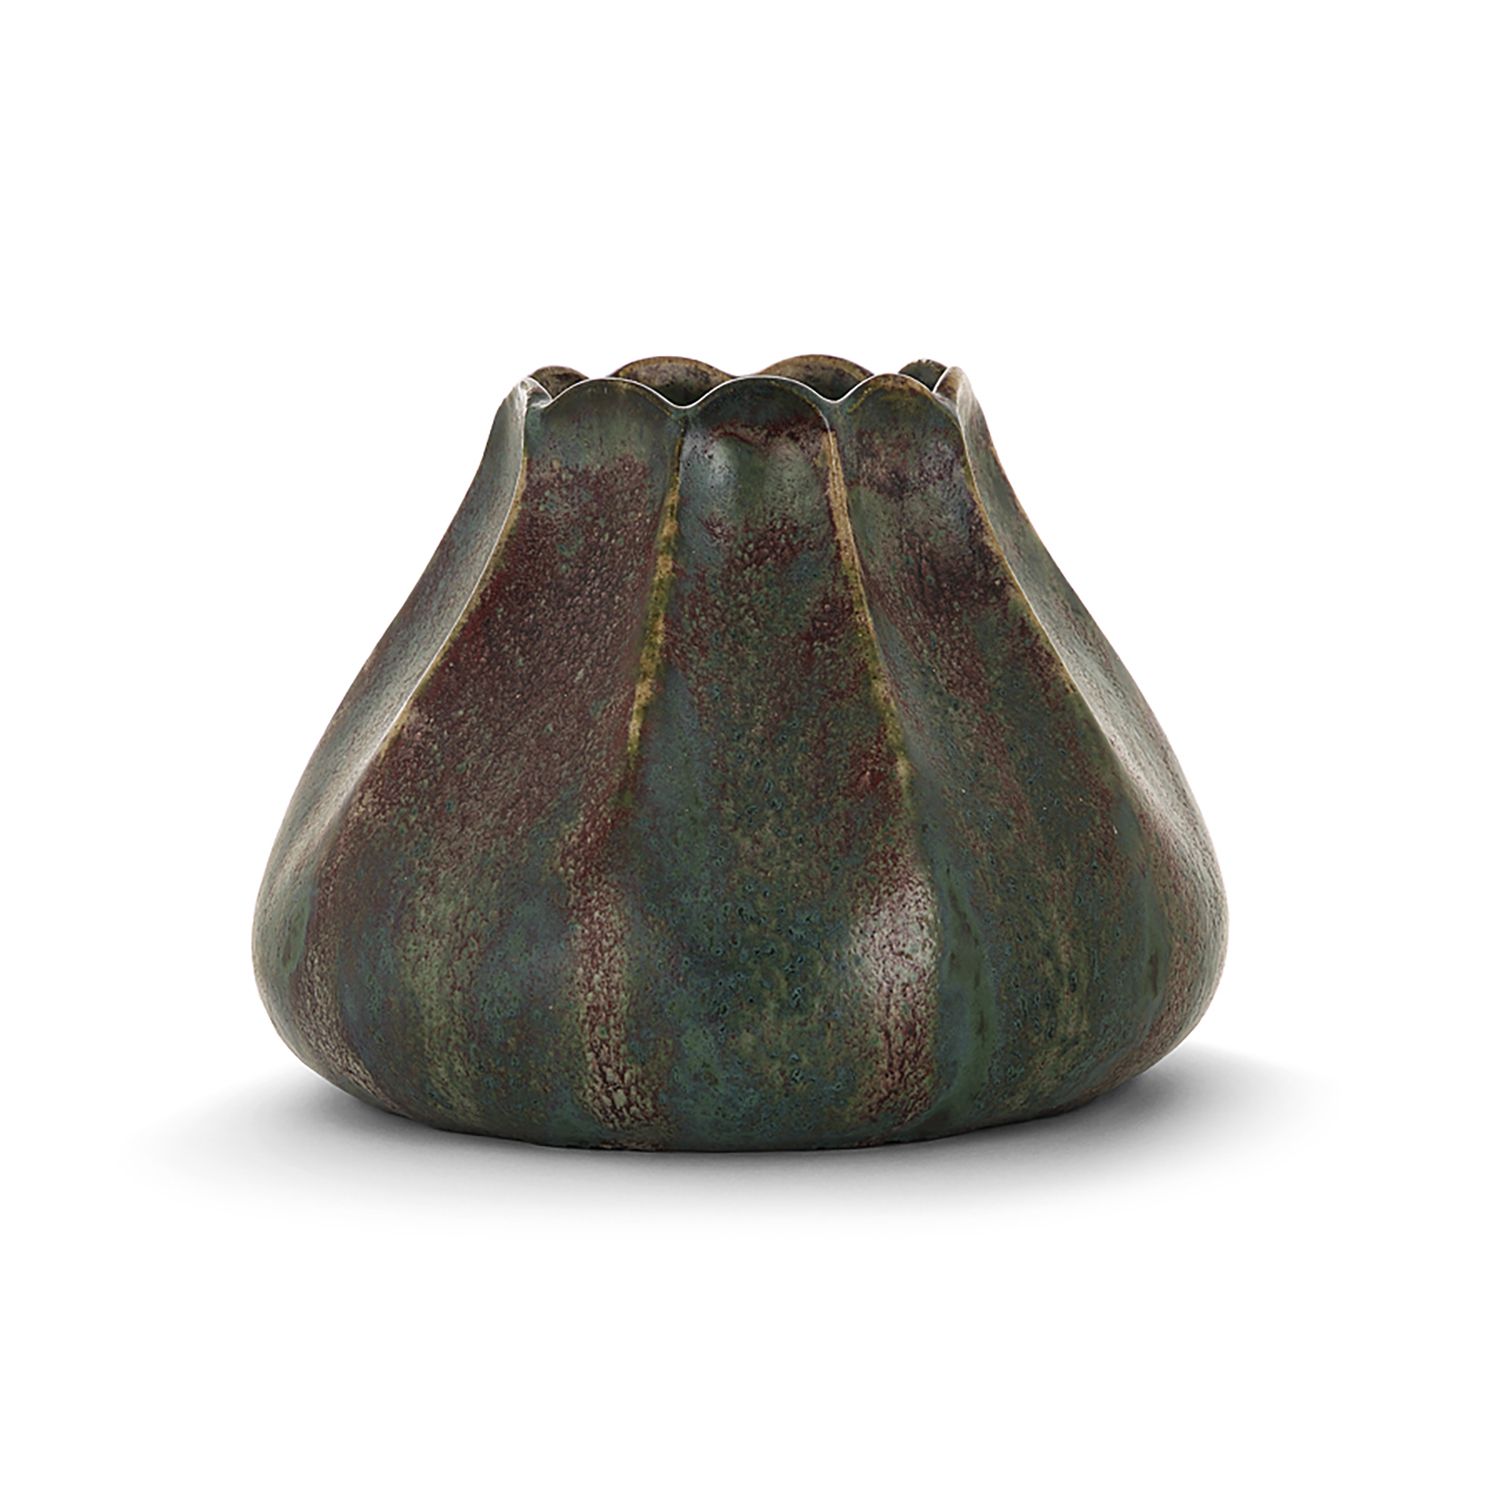 Null 皮埃尔-阿德里安-达尔帕拉特(1844-1910)

瓷器花瓶，多裂的颈部和截顶的圆锥体，牛血色的釉面，米色背景上有绿色和紫色的耦合物。搪瓷签名 "D&hellip;